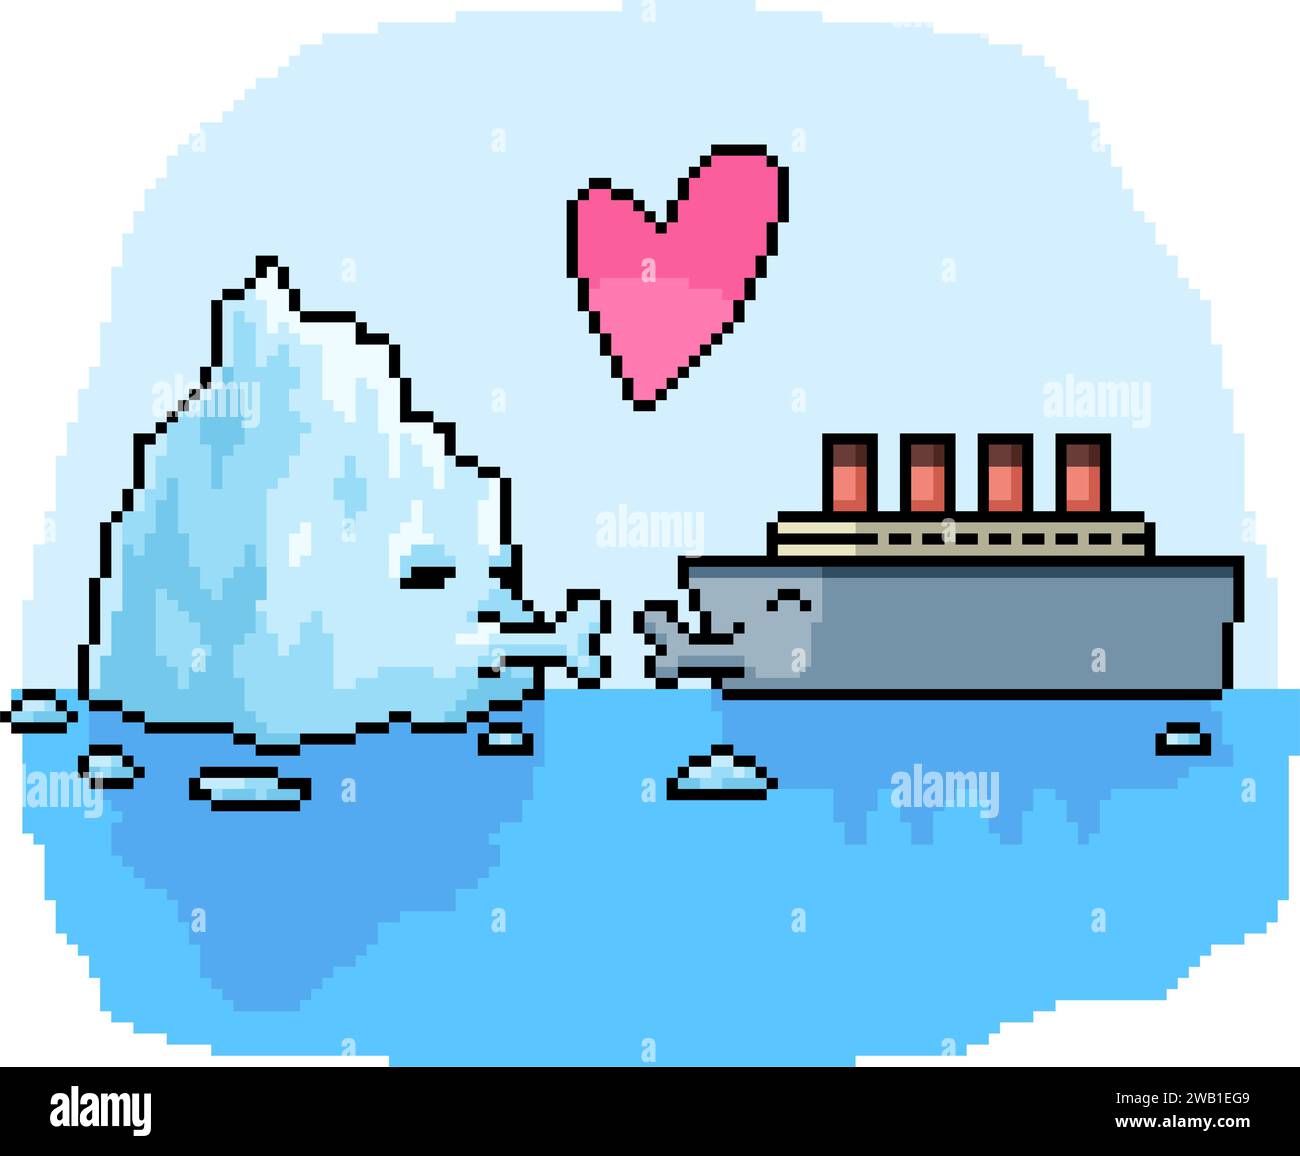 pixel art du couple de navires iceberg Illustration de Vecteur